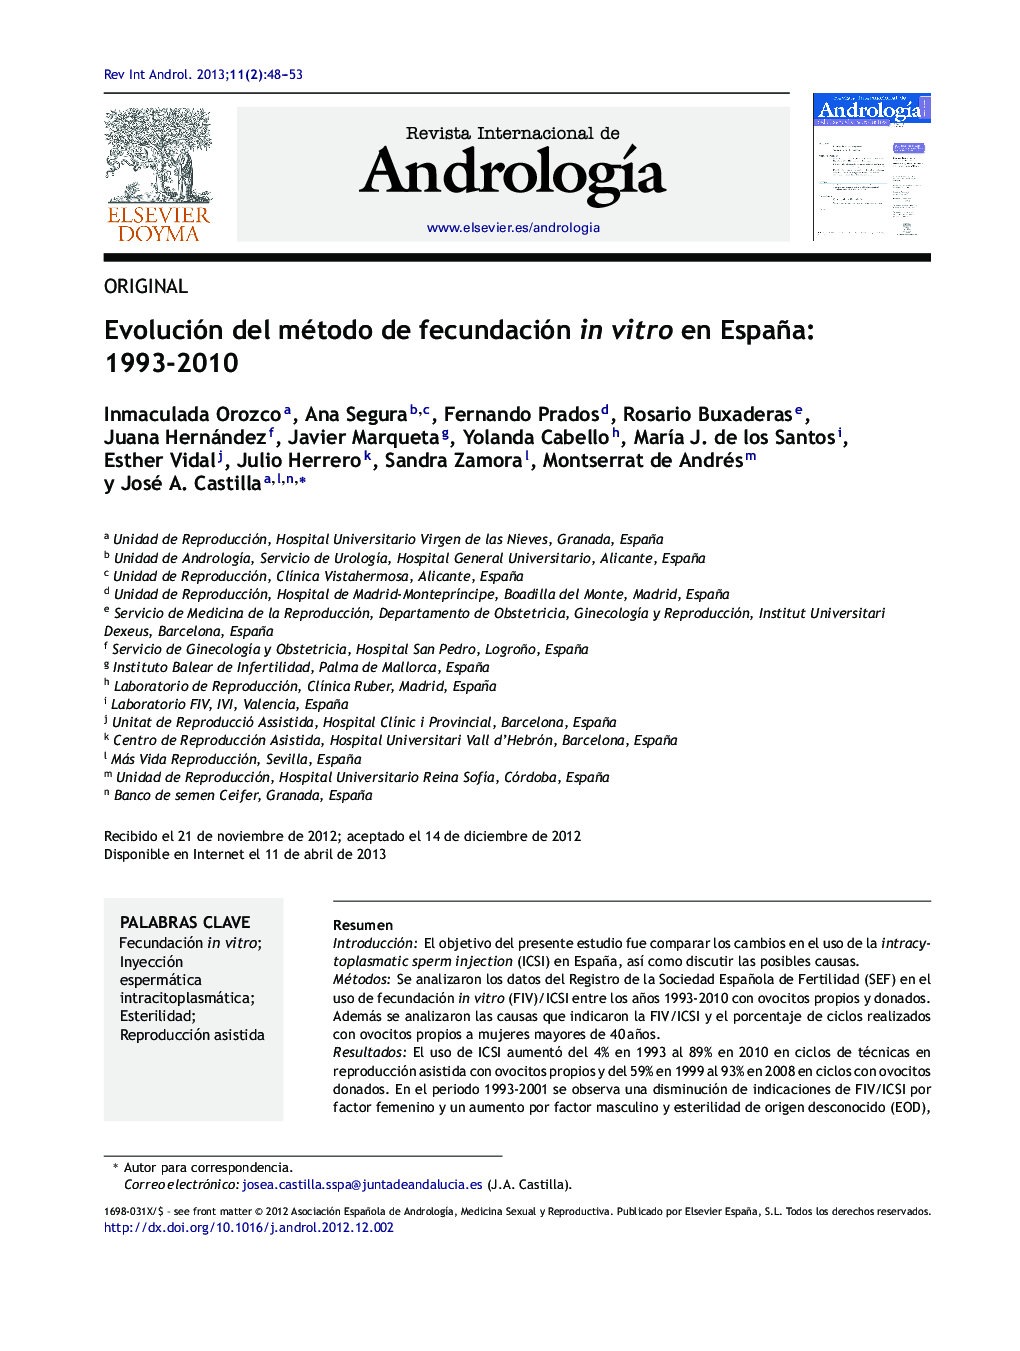 Evolución del método de fecundación in vitro en España: 1993-2010